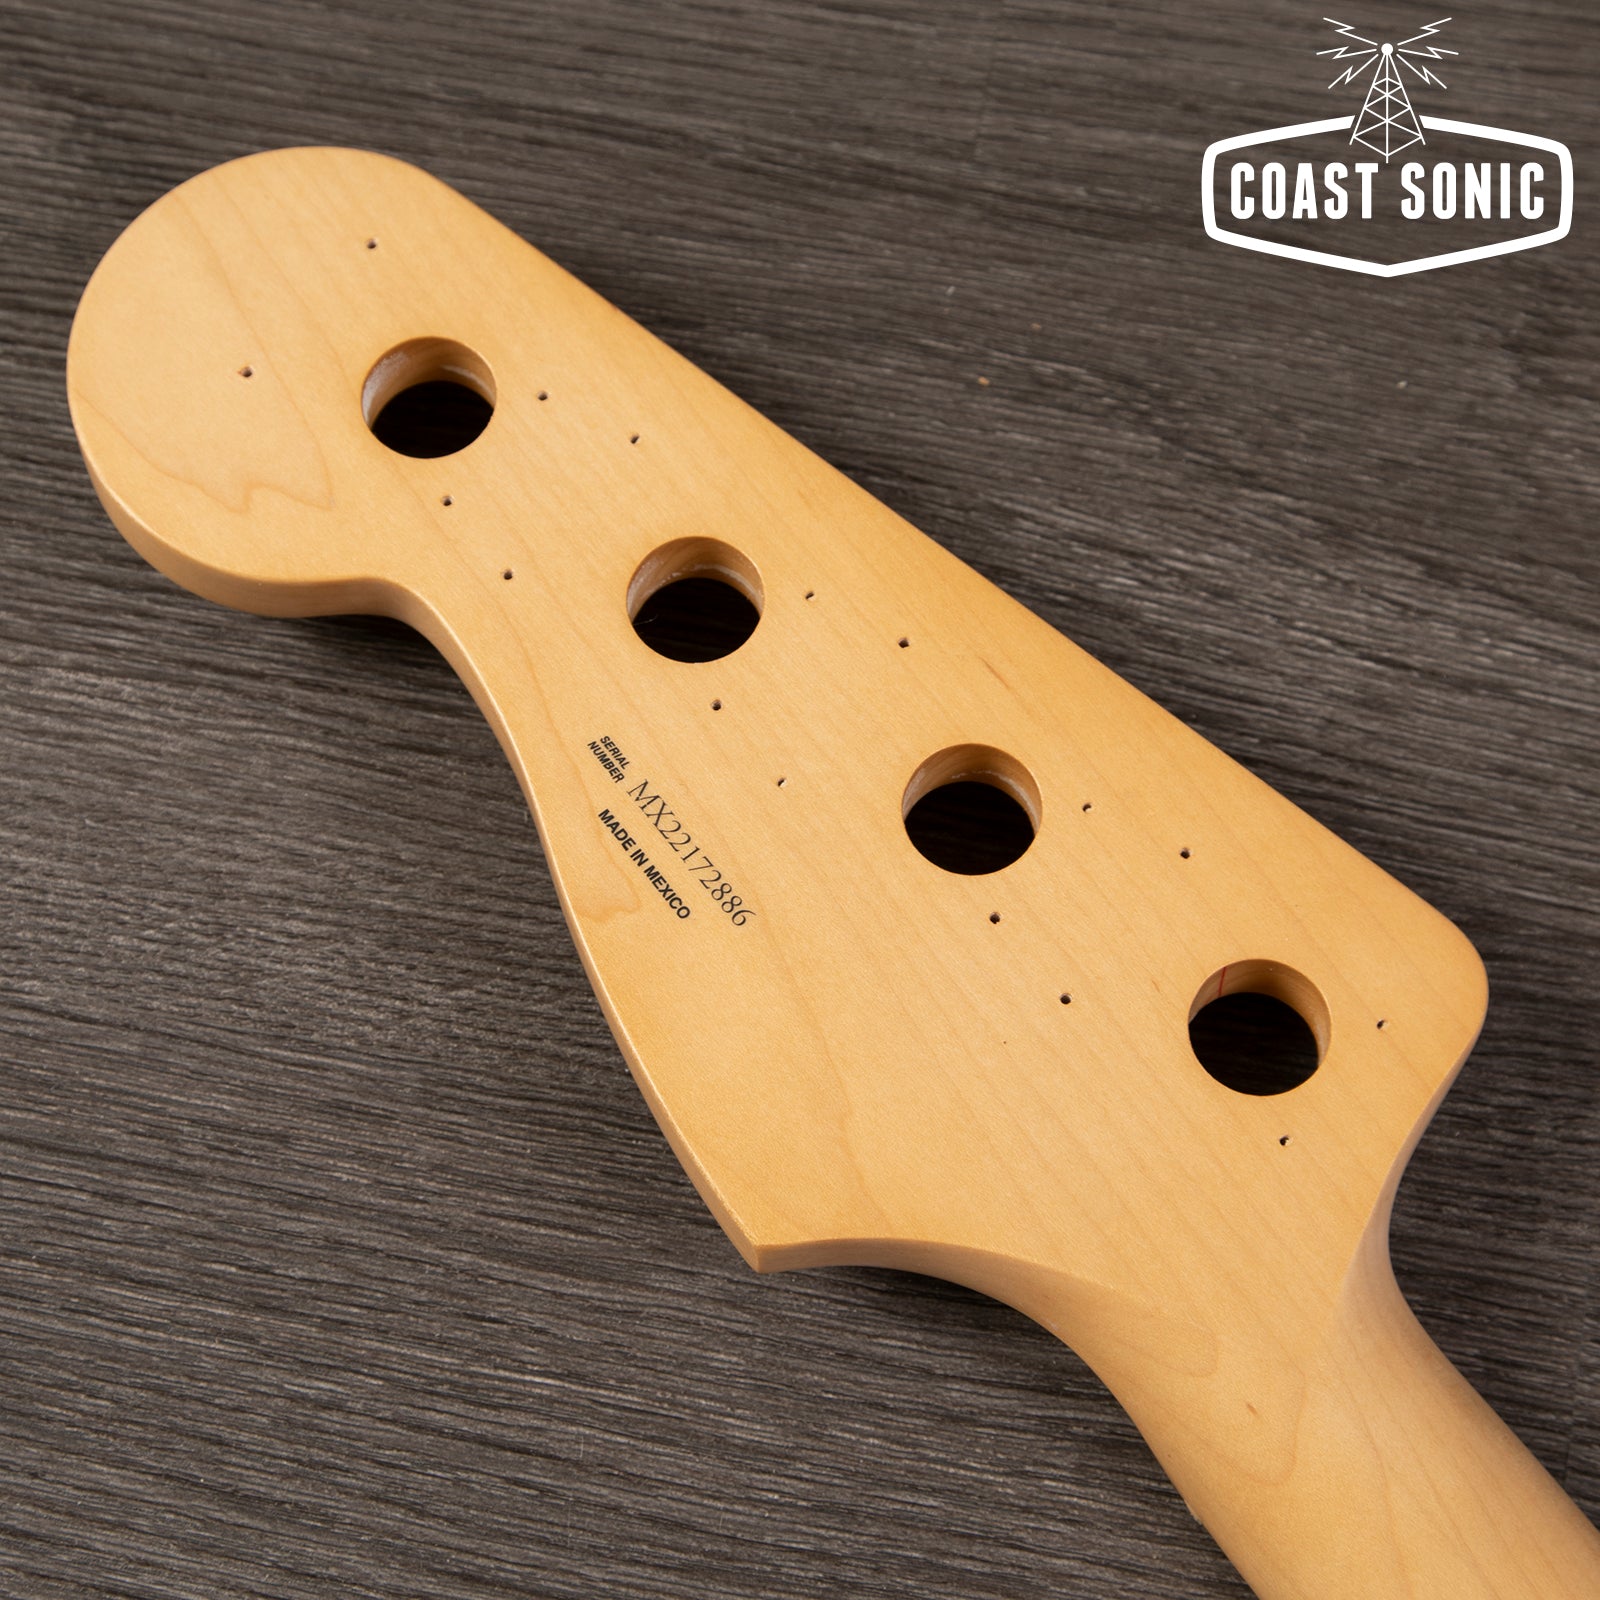 Fender Player Series Jazz Bass Neck Maple